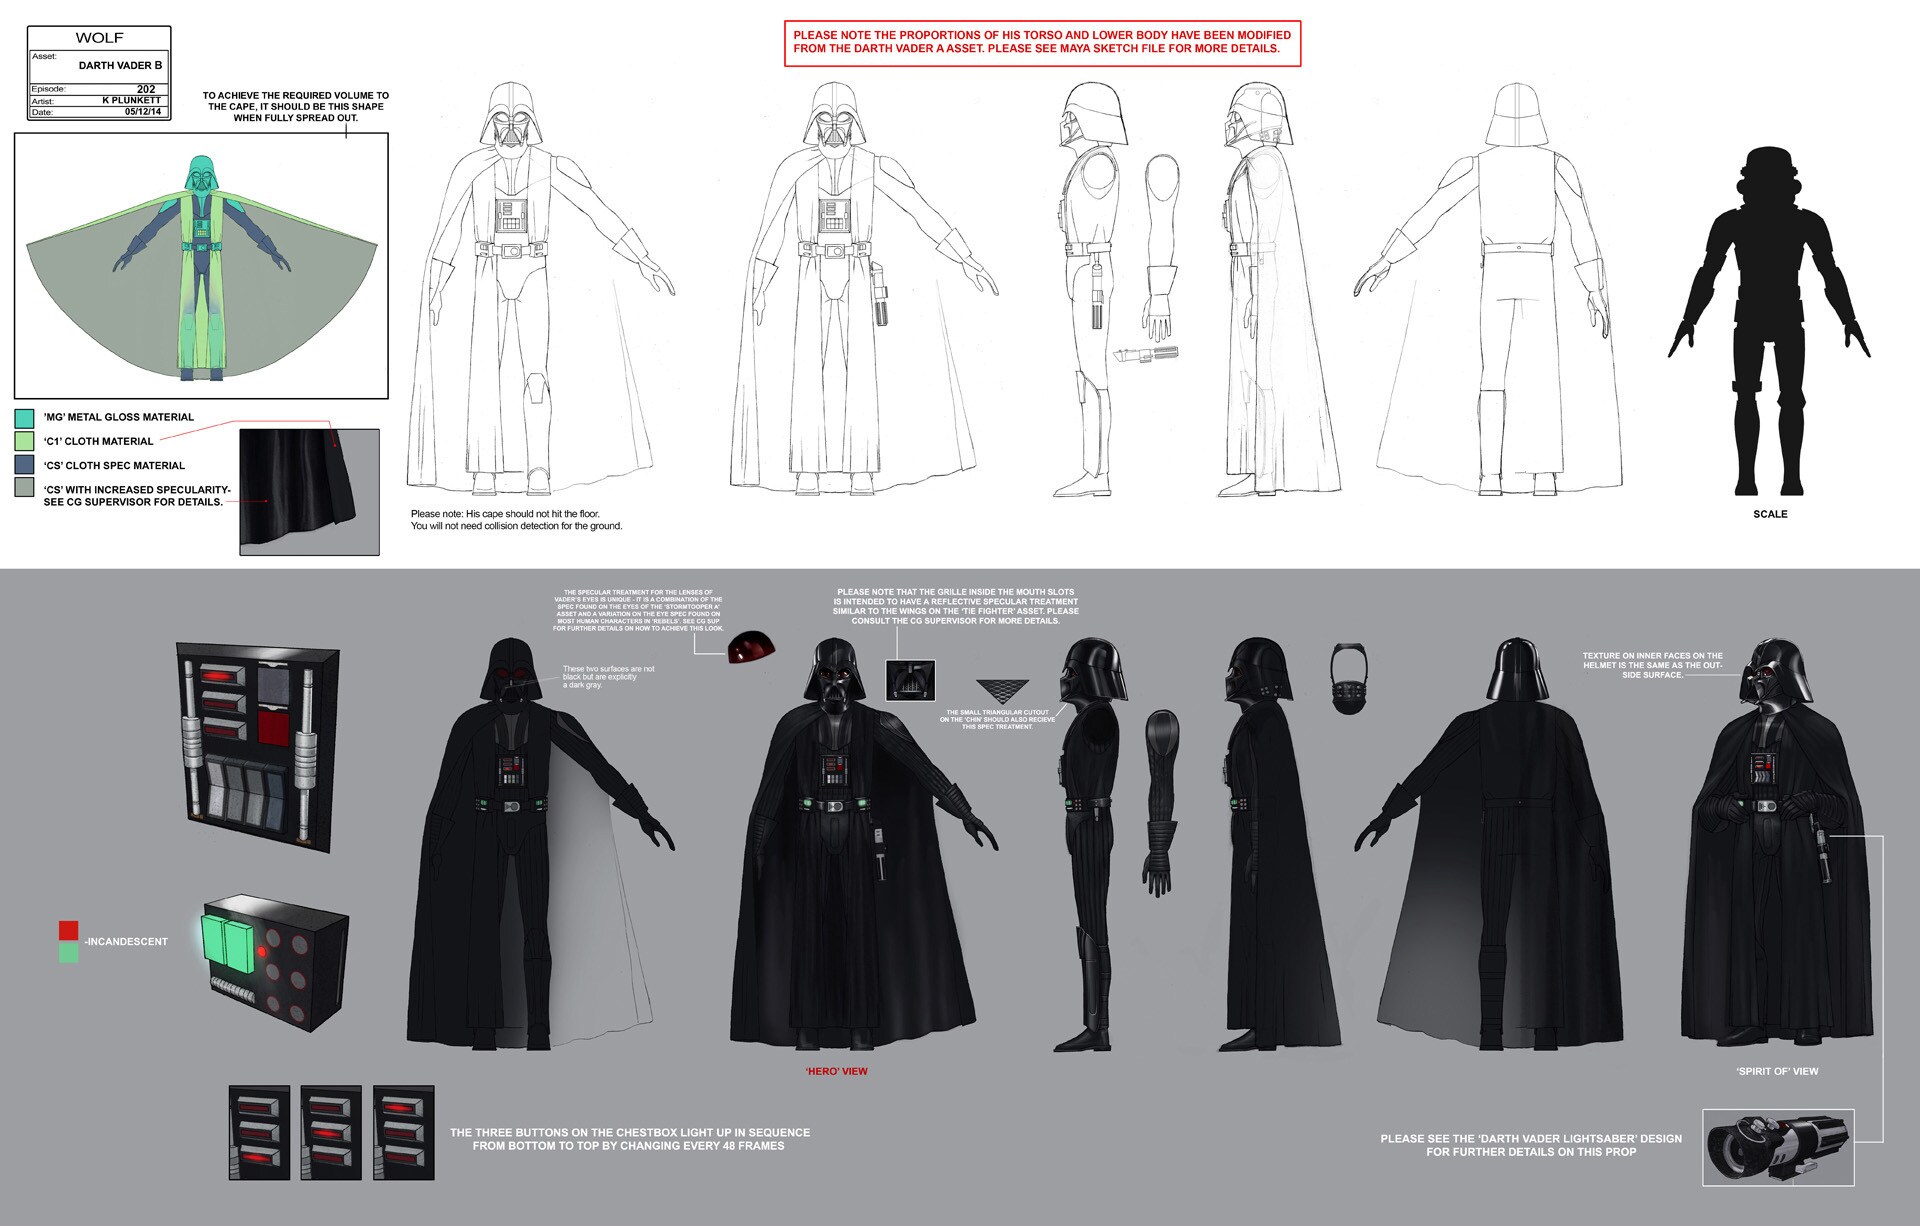 Darth Vader full character illustration by Kilian Plunkett.